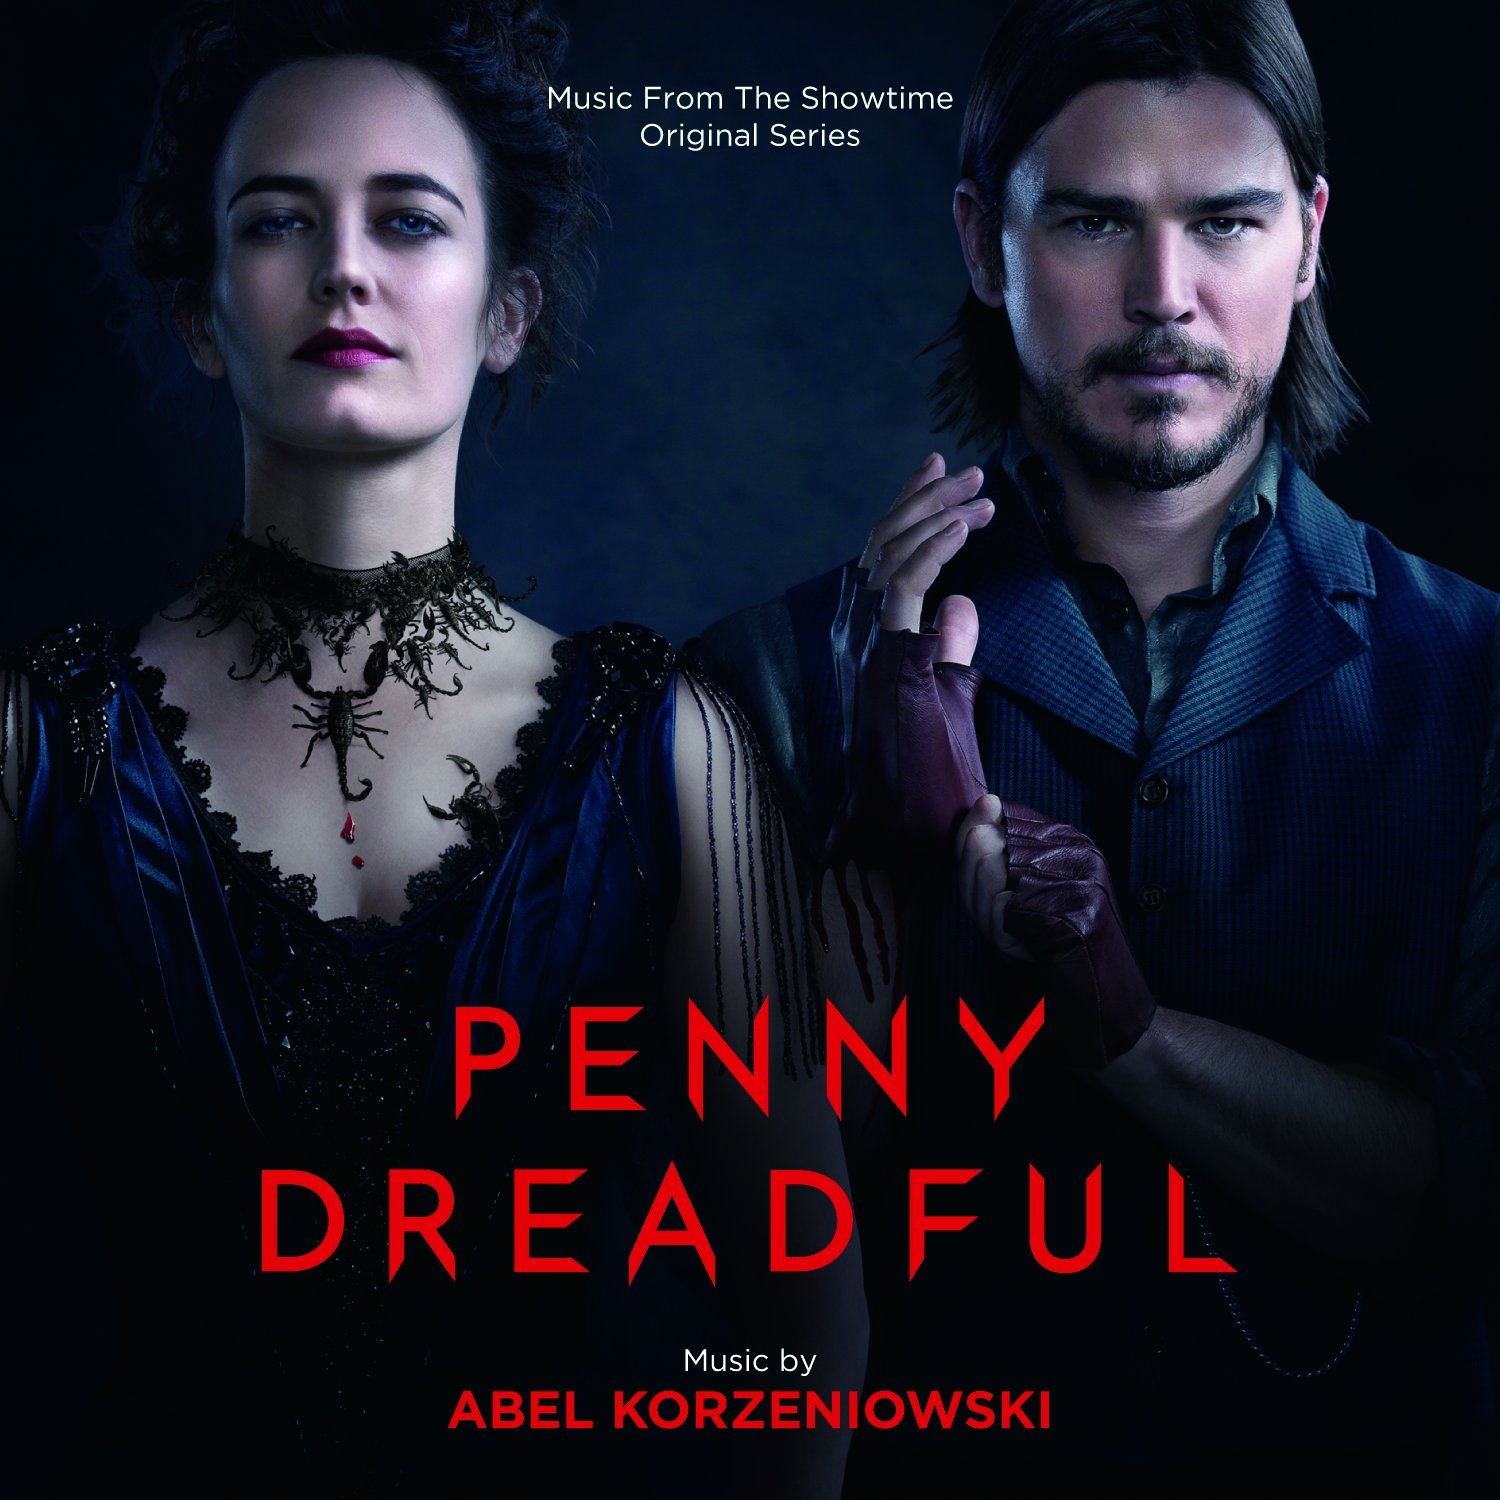 Vinile Abel Korzeniowski - Penny Dreadful NUOVO SIGILLATO, EDIZIONE DEL 13/02/2017 SUBITO DISPONIBILE